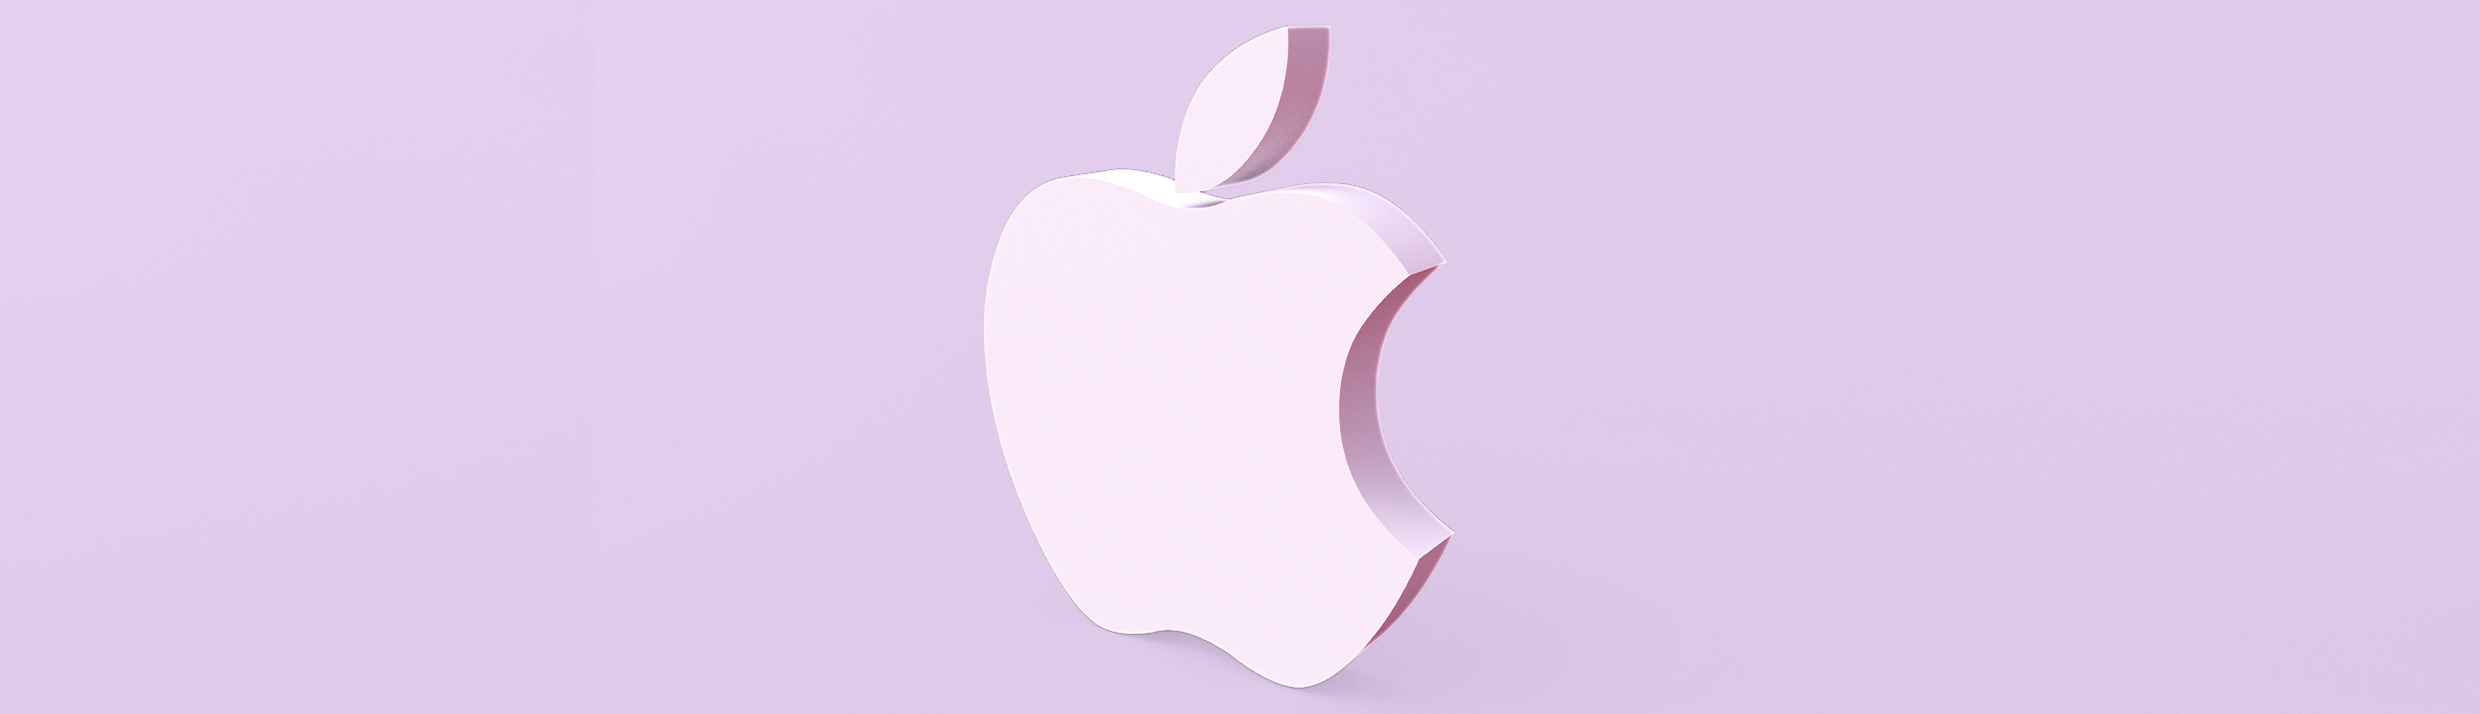 Het Apple logo is centraal gepositioneerd, het logo is een lichtpaarse kleur die ook op de achtergrond te zien is.